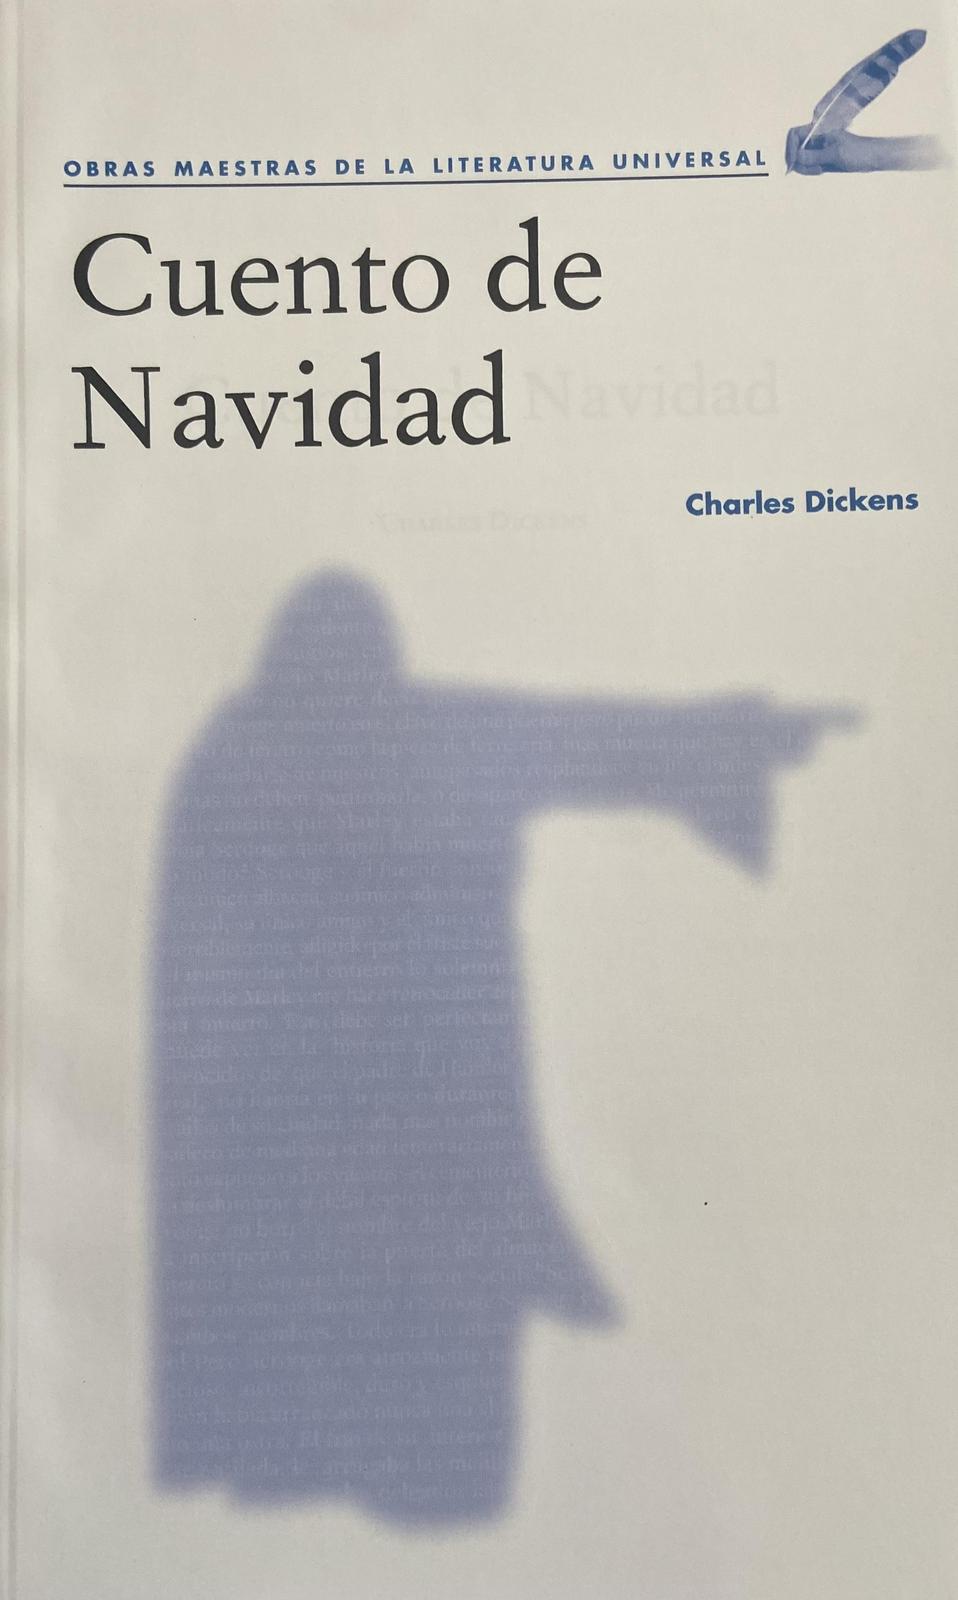 Charles Dickens: Cuento de Navidad (Spanish language, 2020, Agencia Promotora de Publicaciones, S.A. de C.V.)